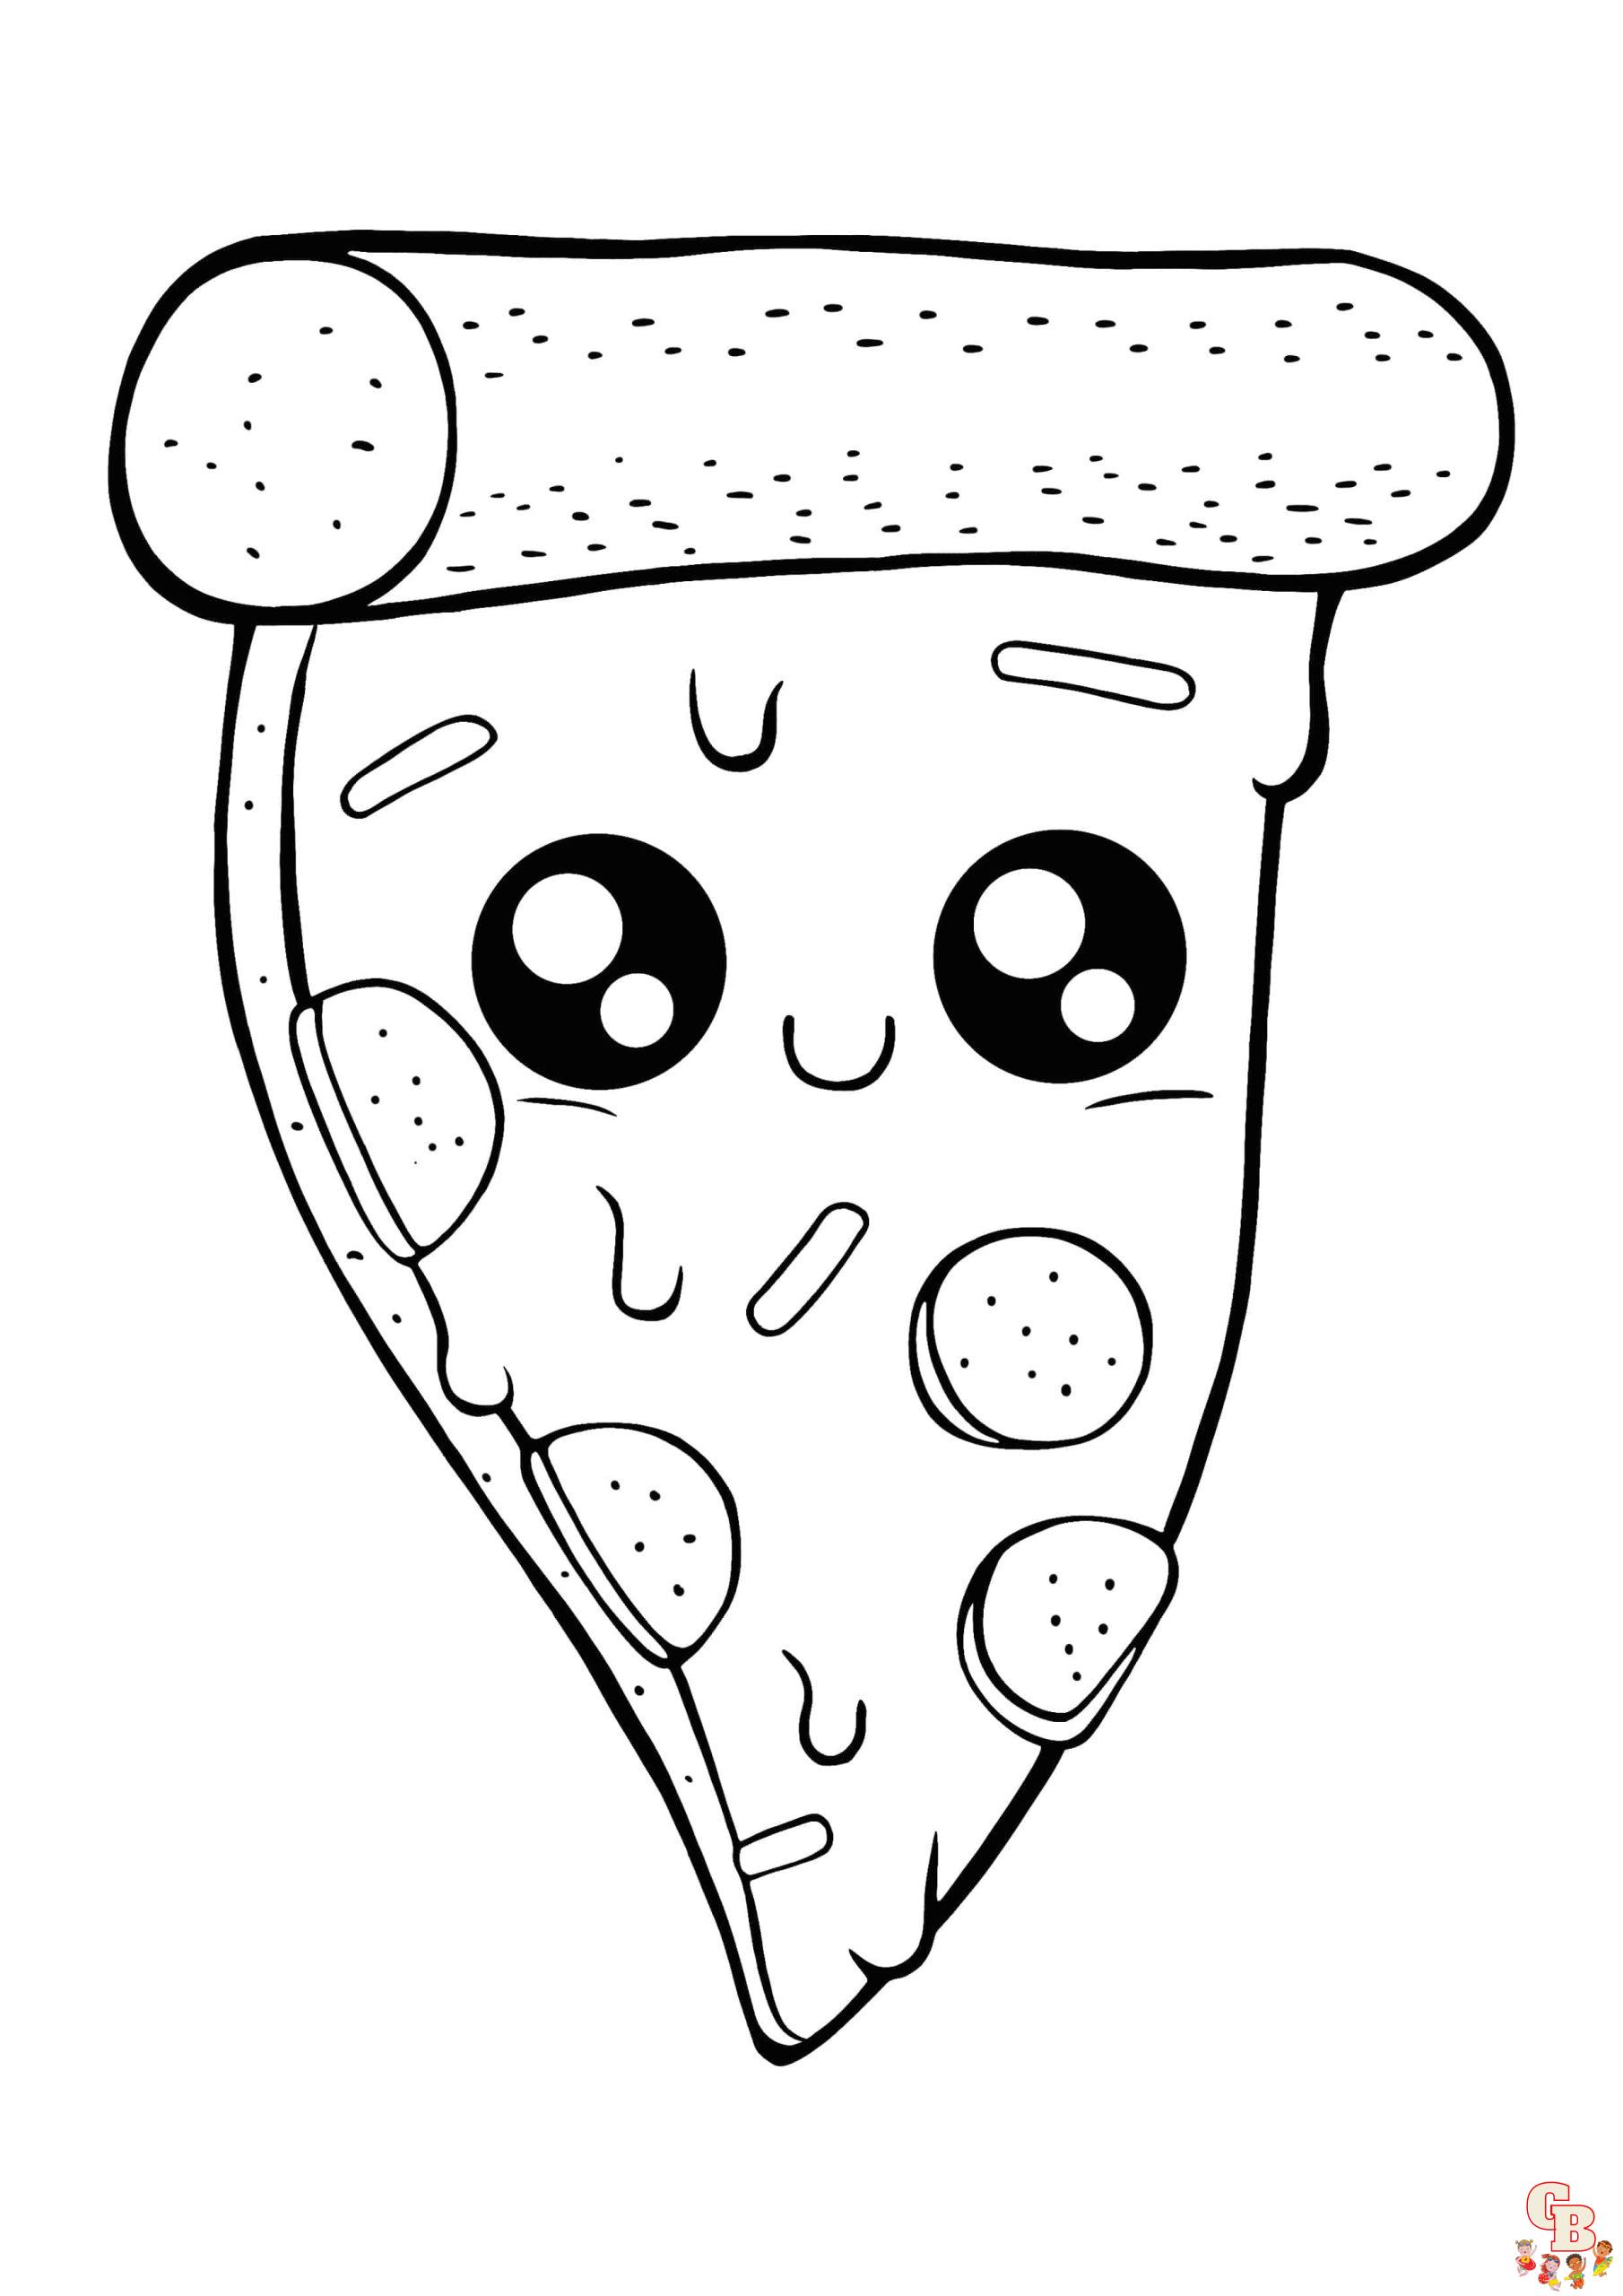 اكتشف صفحات تلوين البيتزا الممتعة والإبداعية | GBcoloring